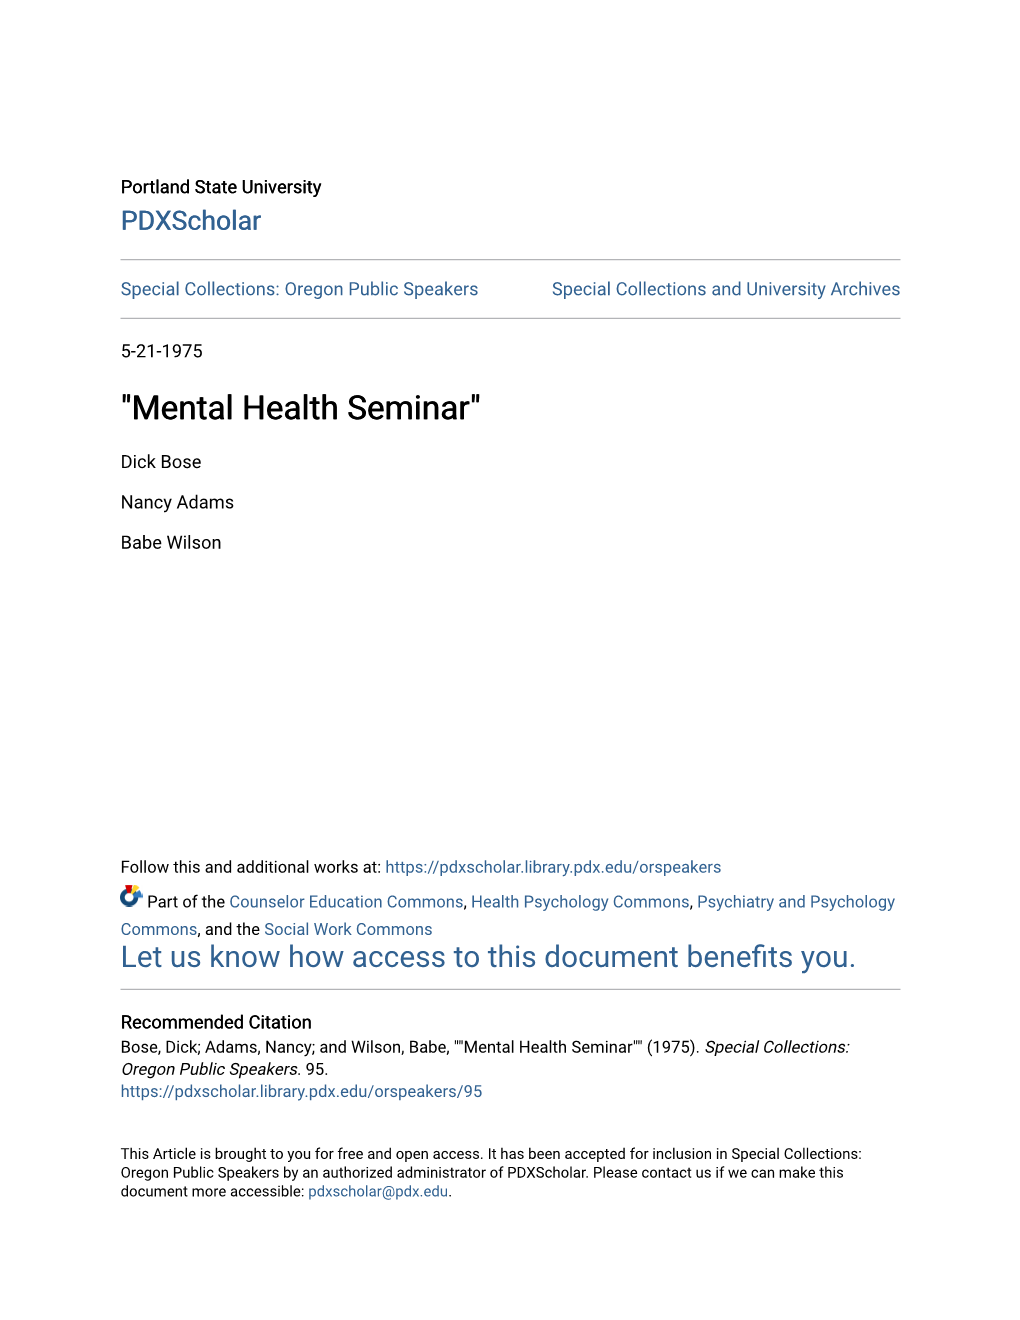 "Mental Health Seminar"